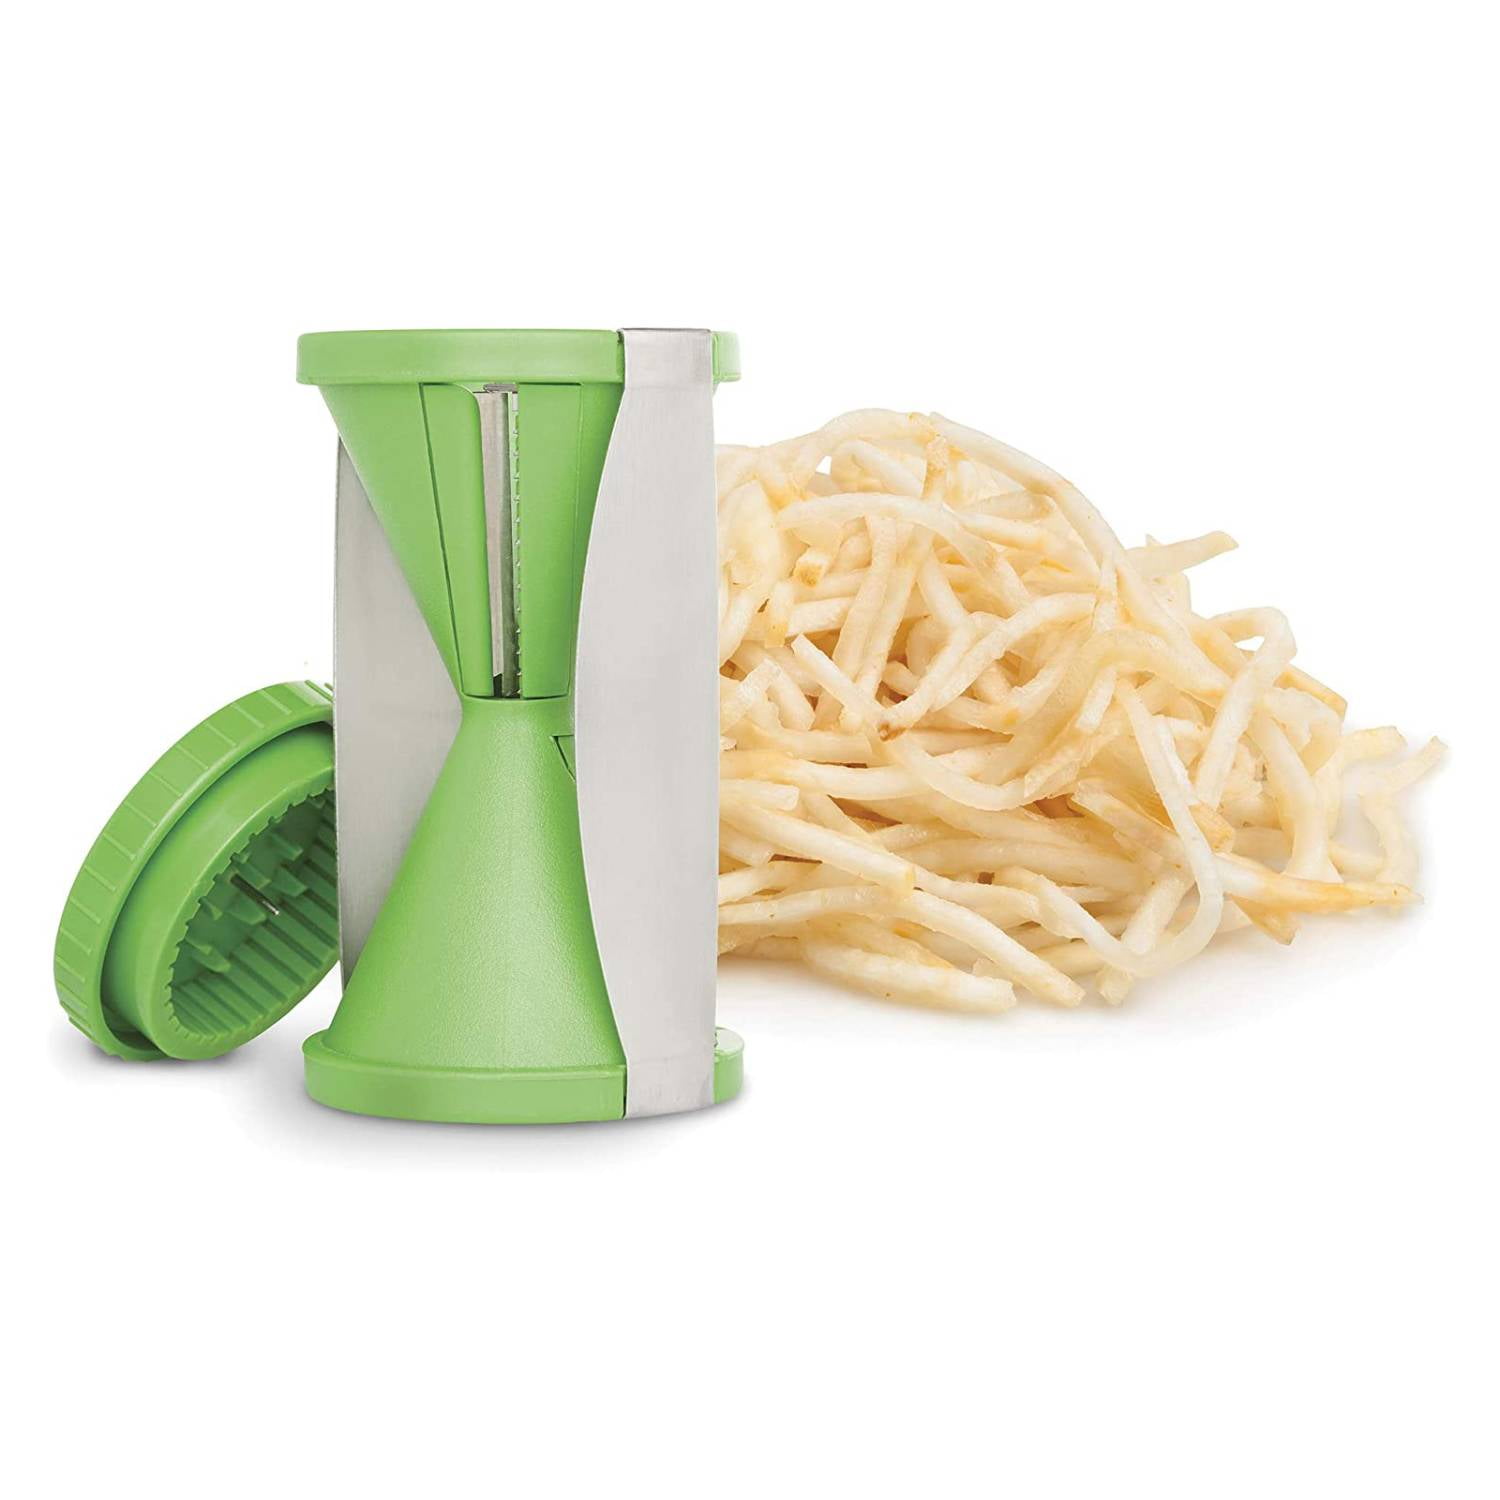 Home-it Handheld Spirelli Spiral Vegetable Slicer, Commercial